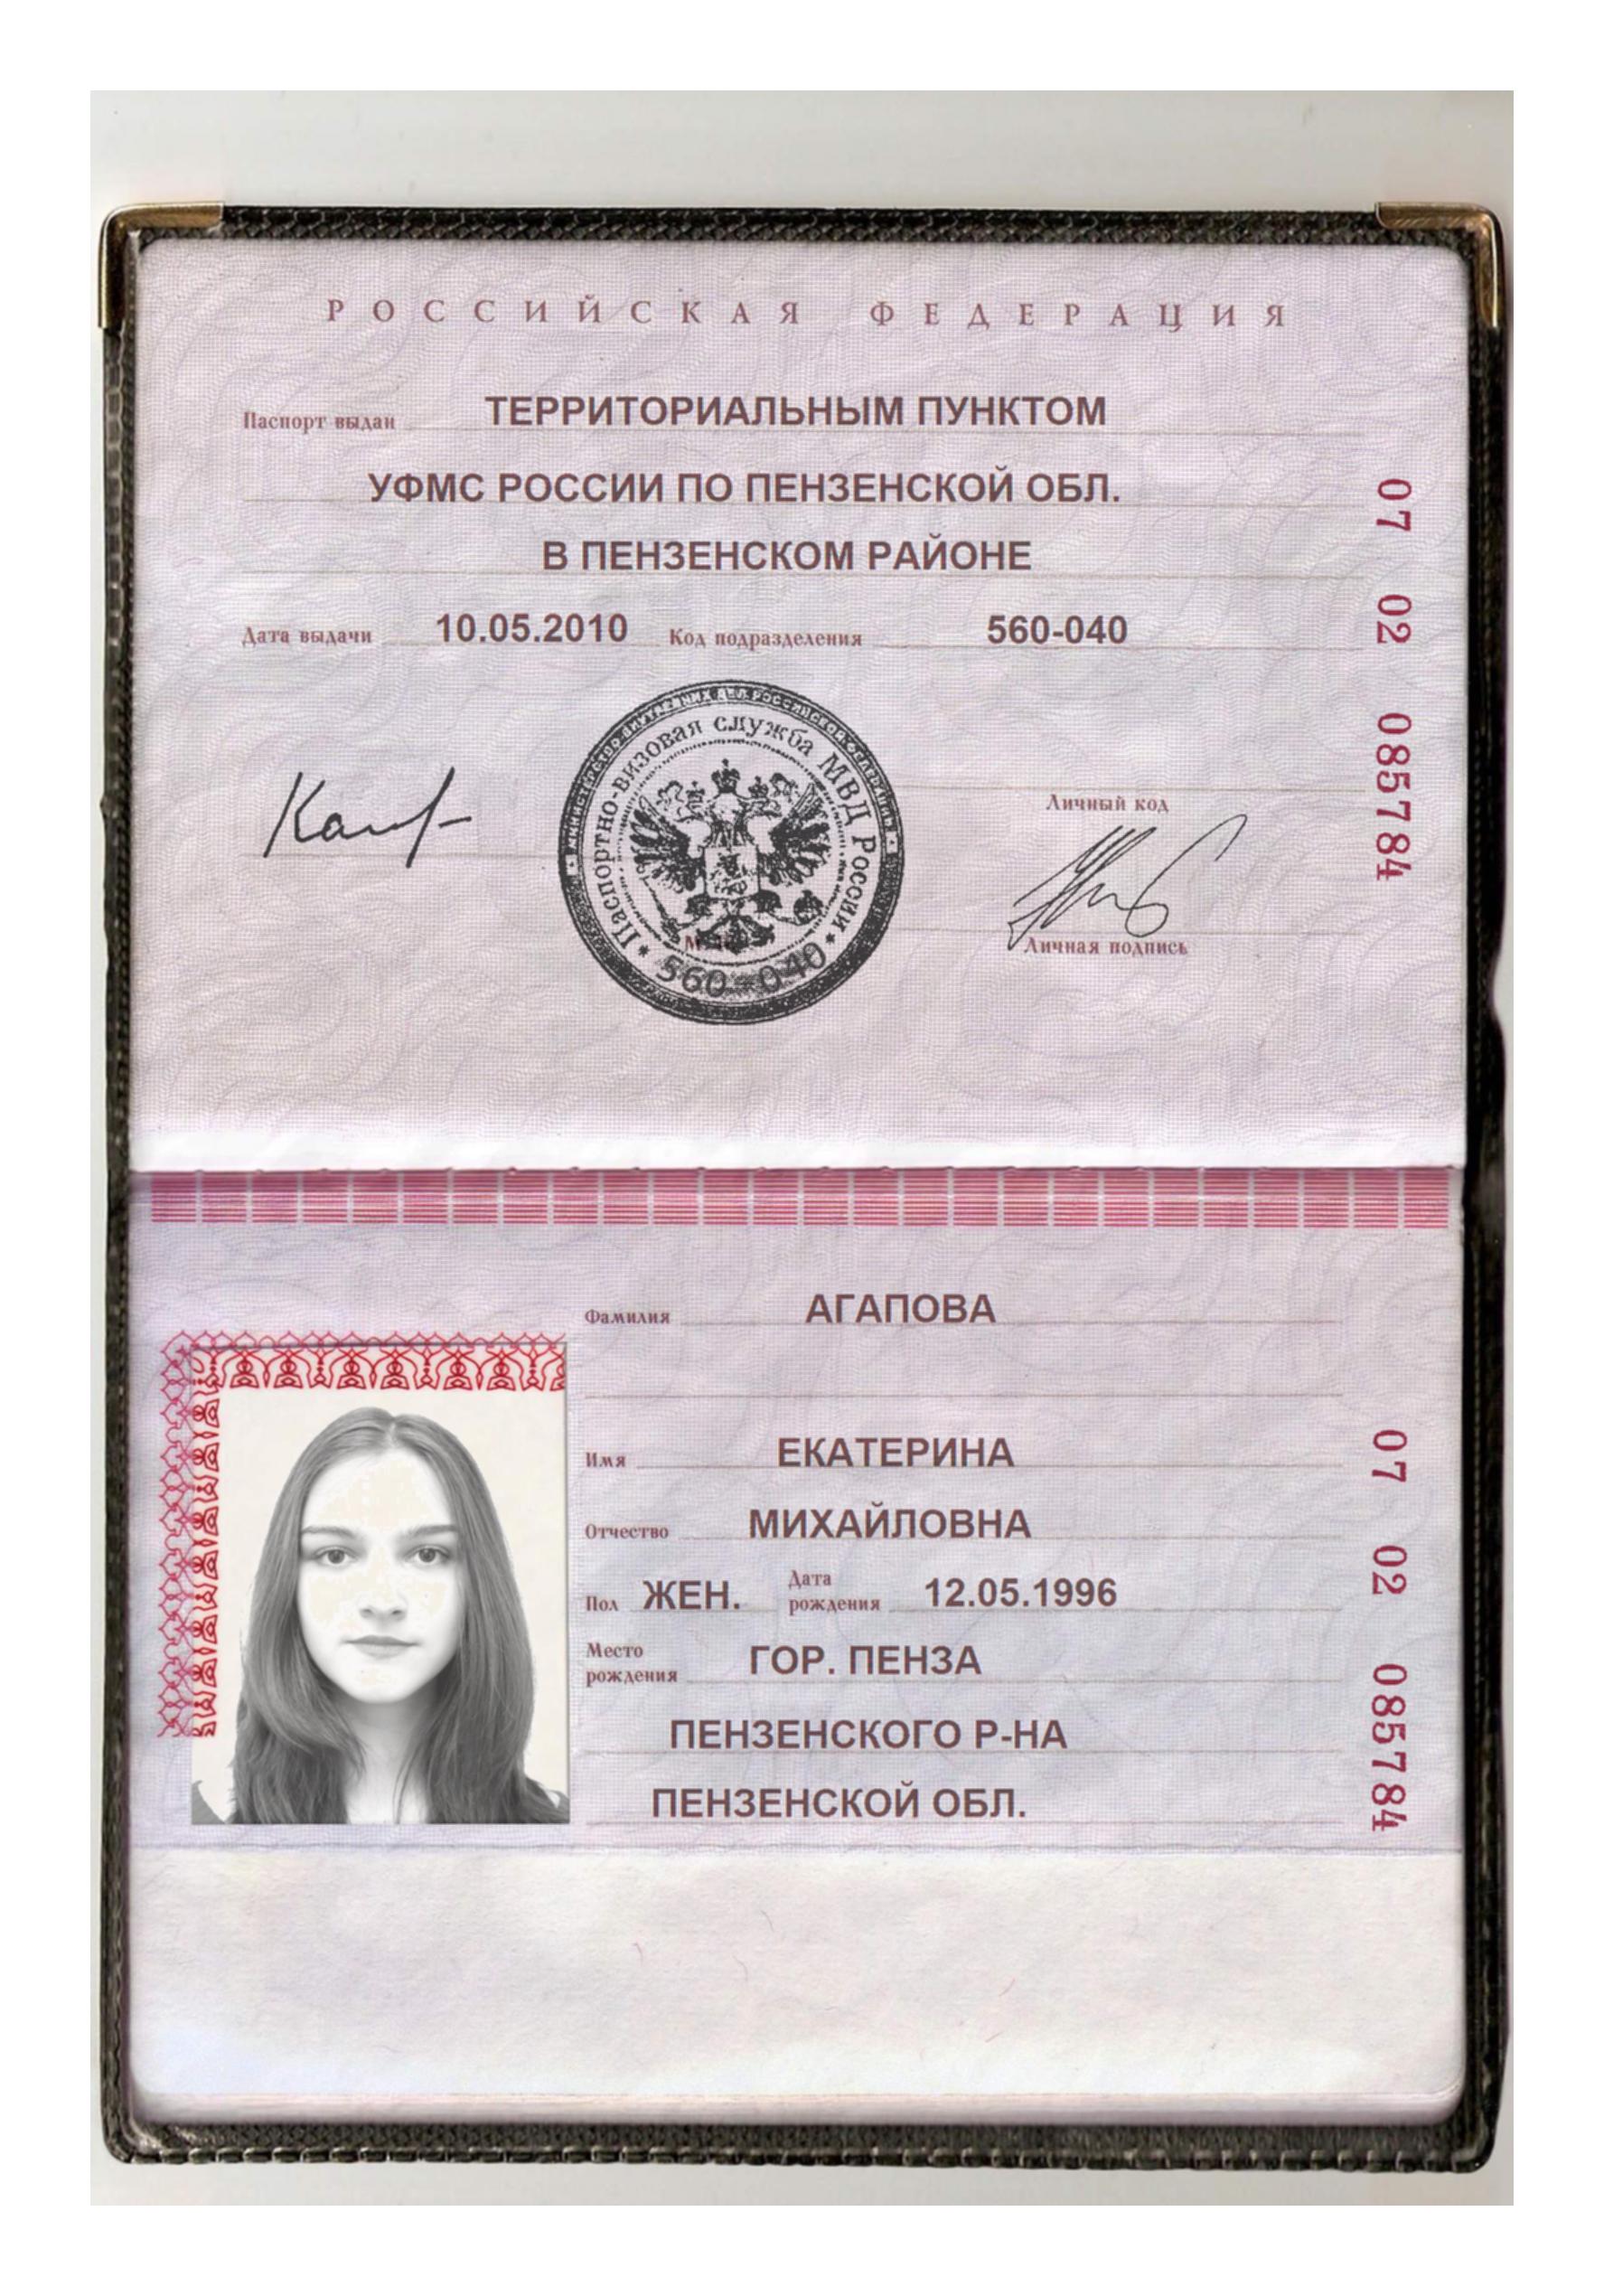 фотошоп паспорта